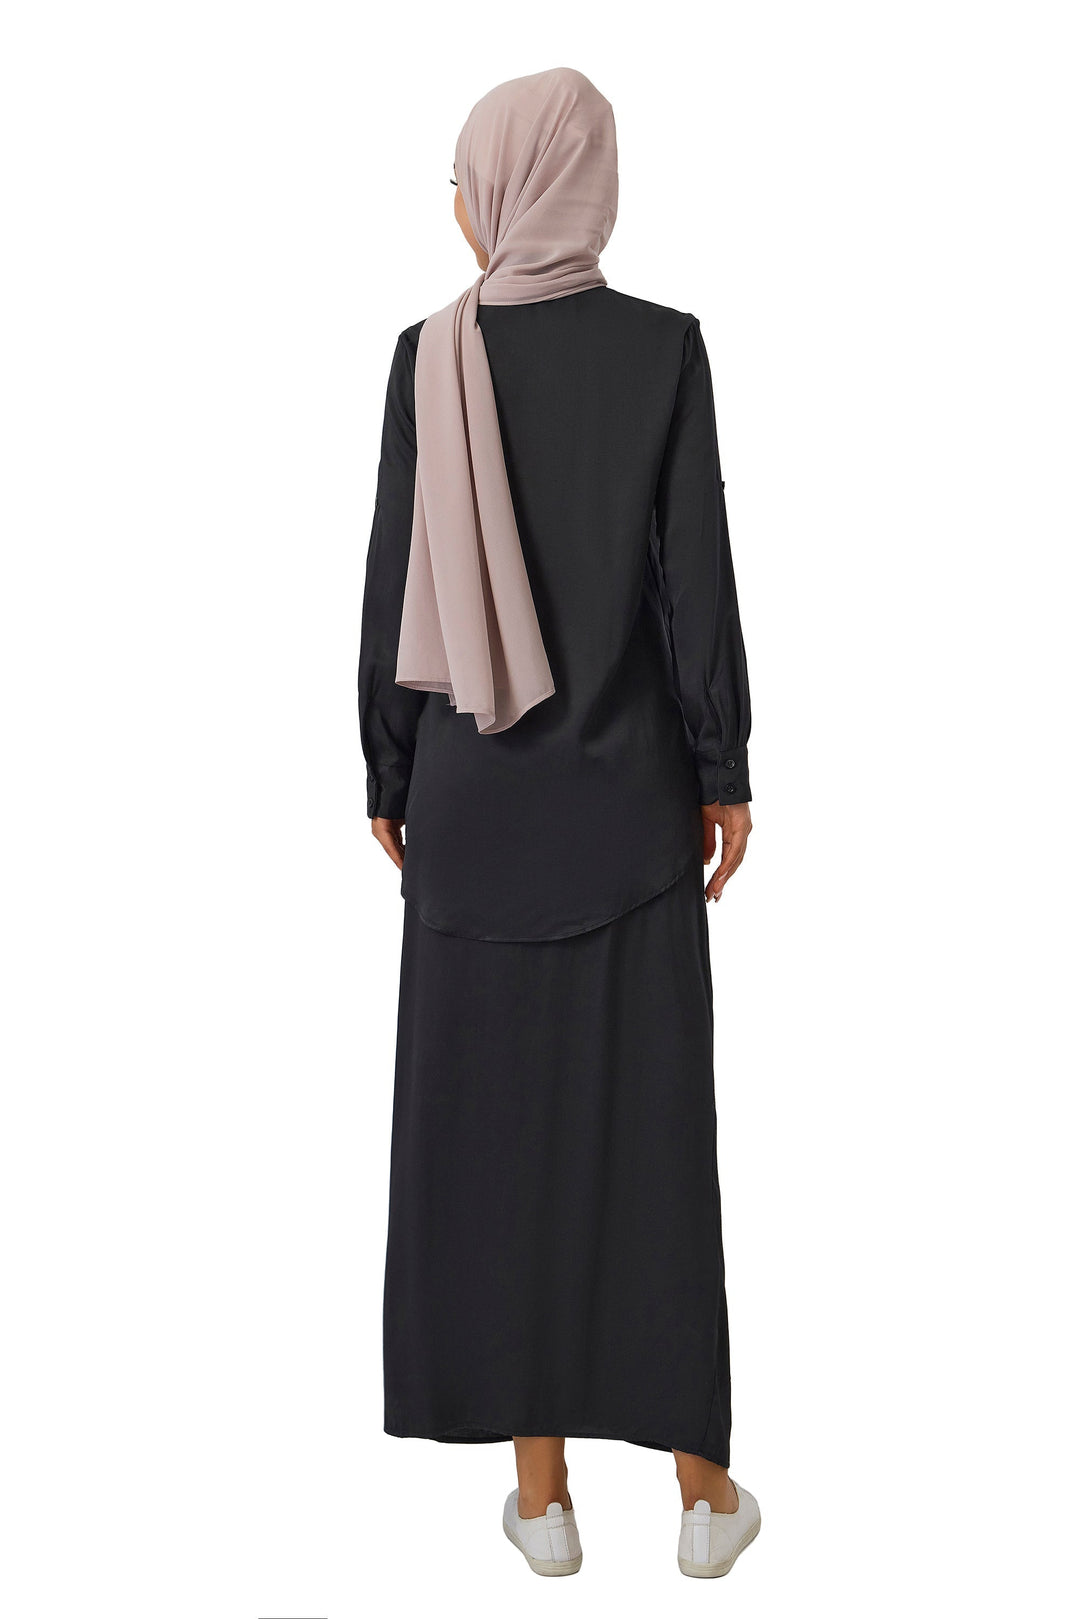 Urban Modesty - Light Khaki Chiffon Hijab